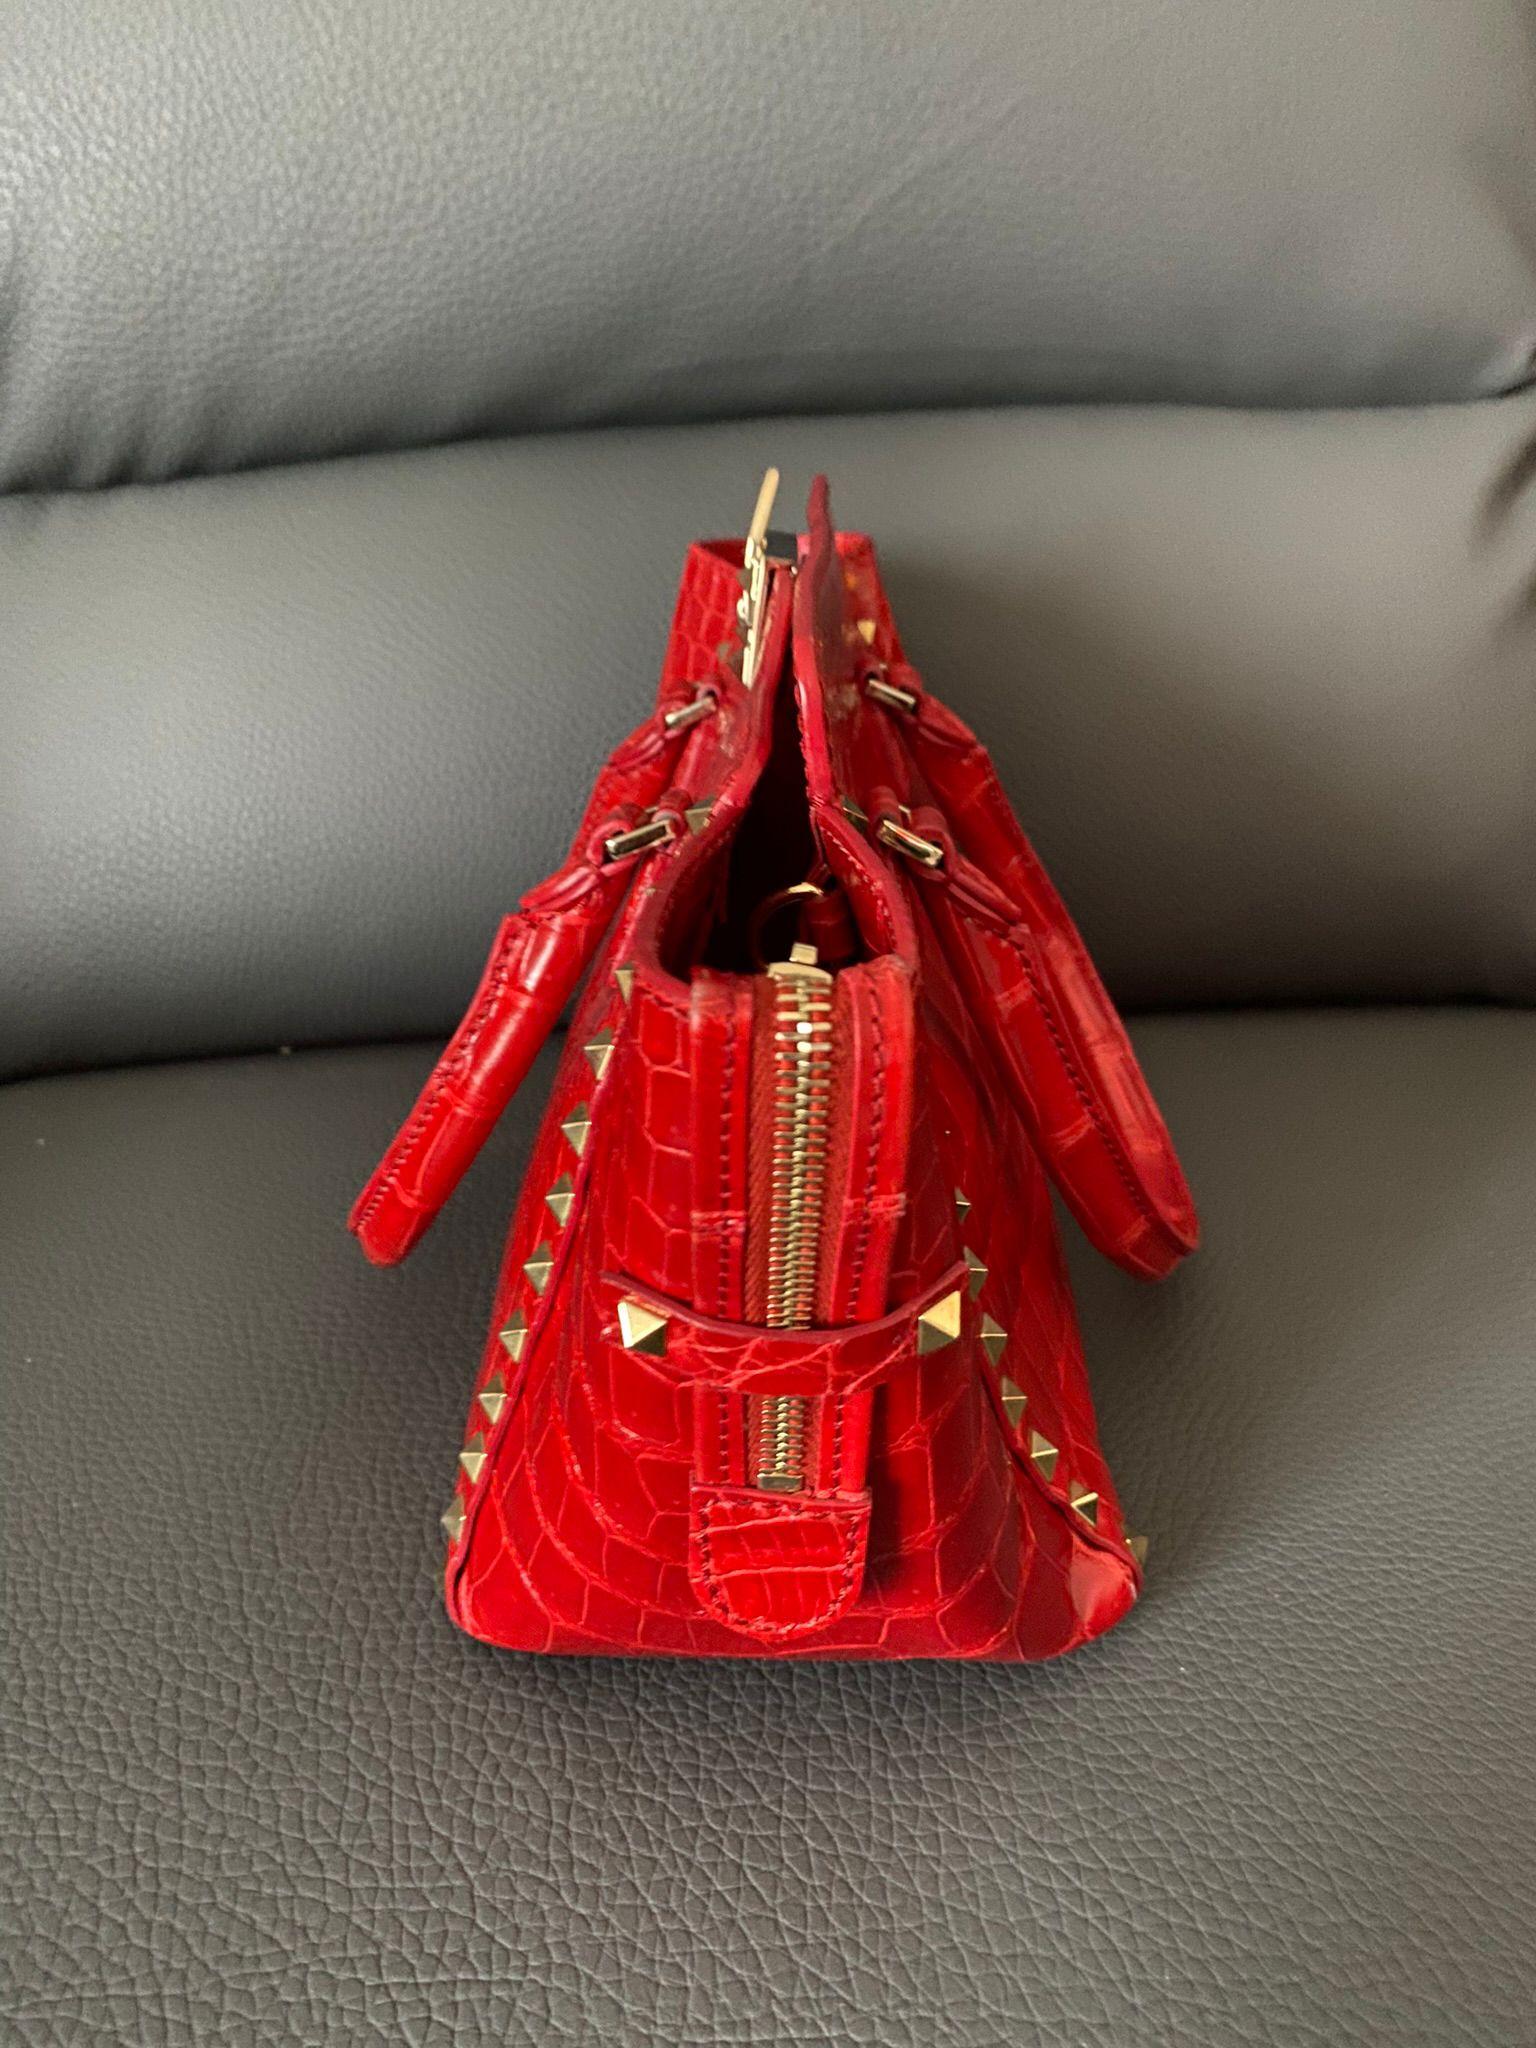 red valentino handbag